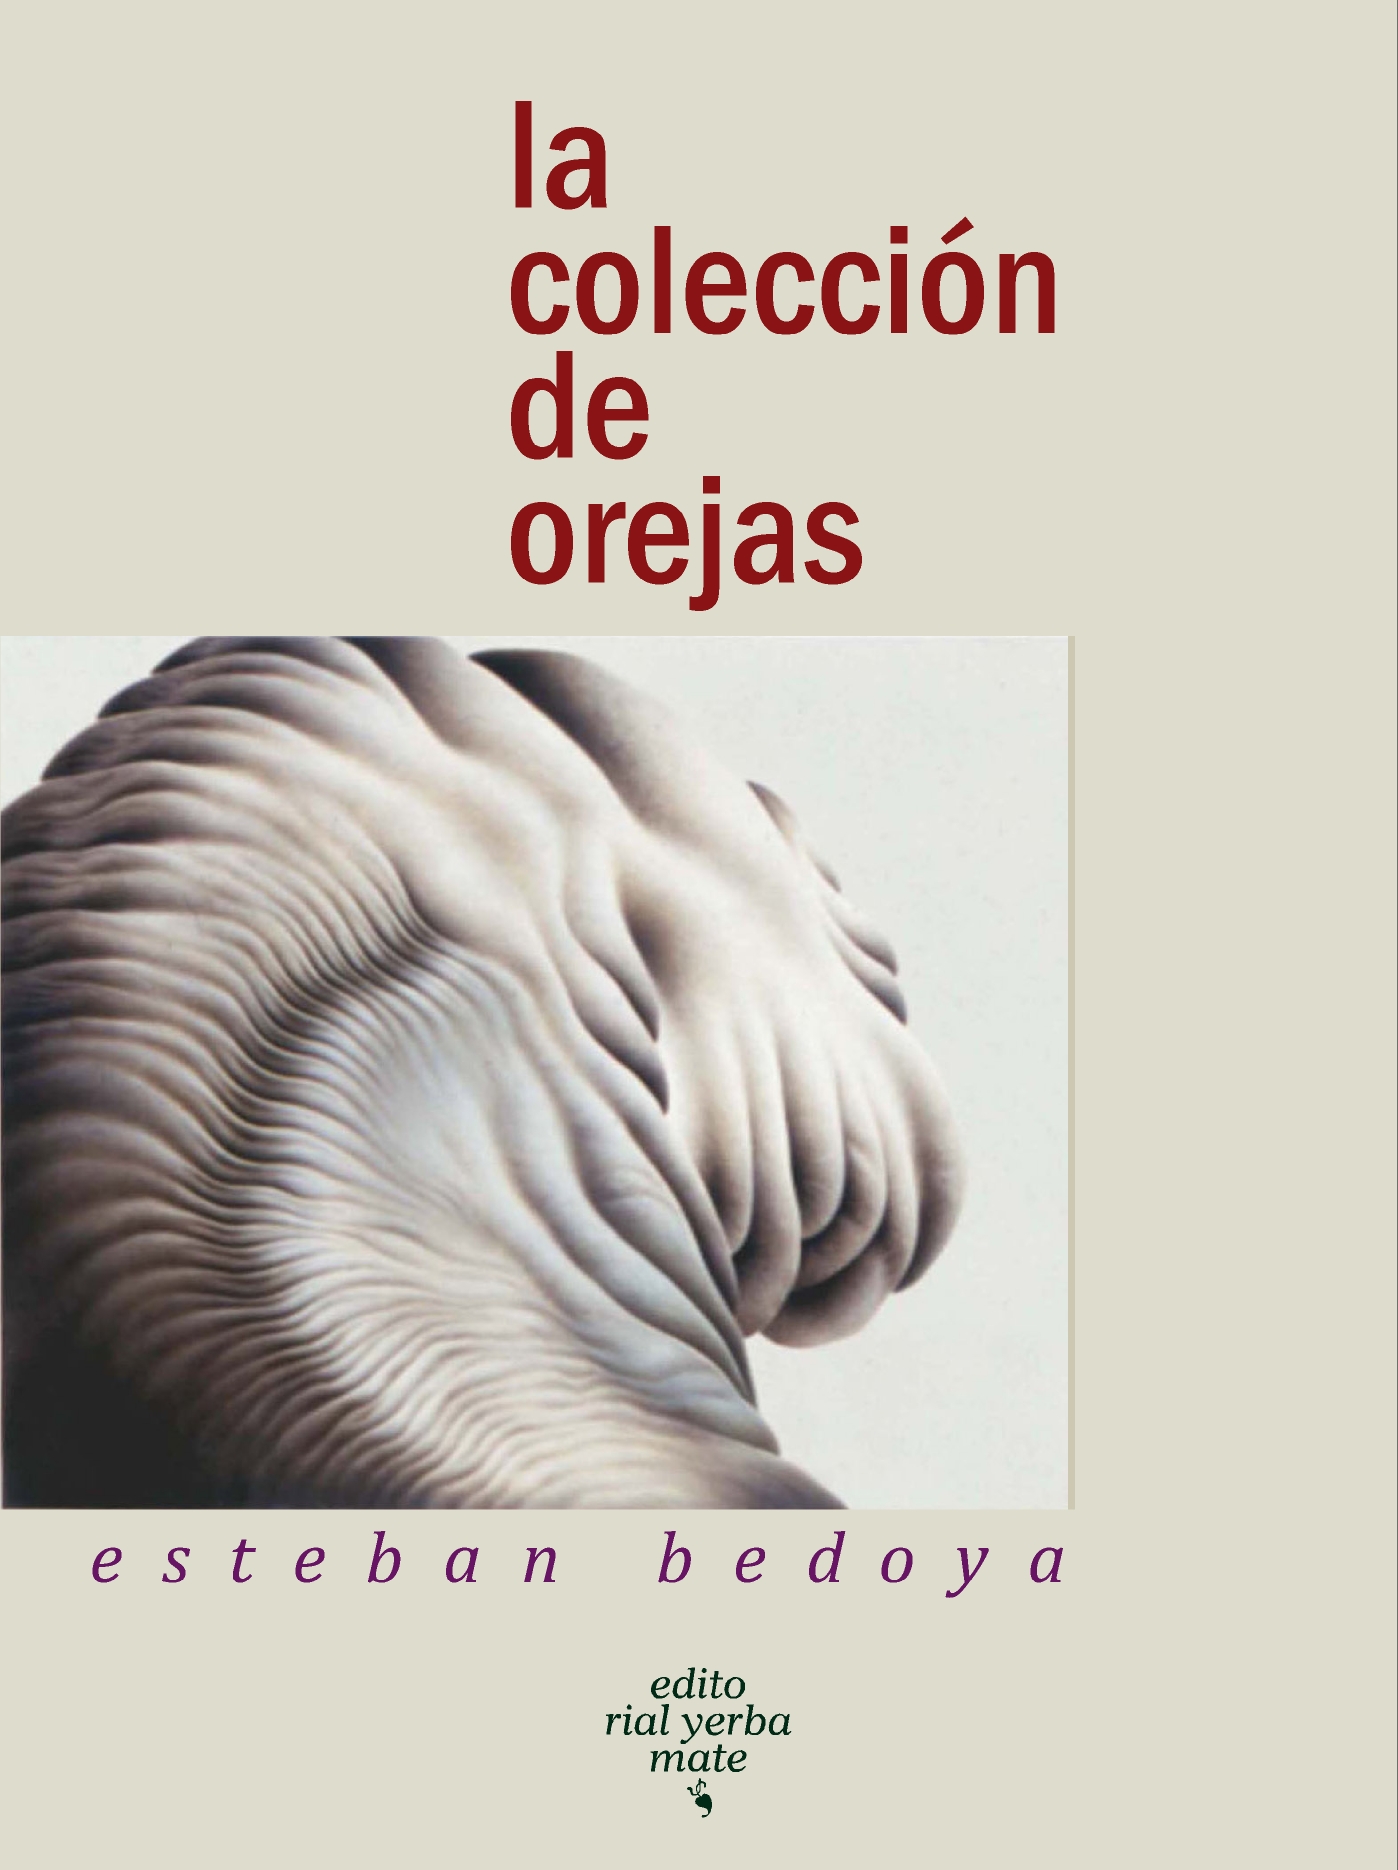 Tapa La coleccion de orejas, Paraguay.jpg